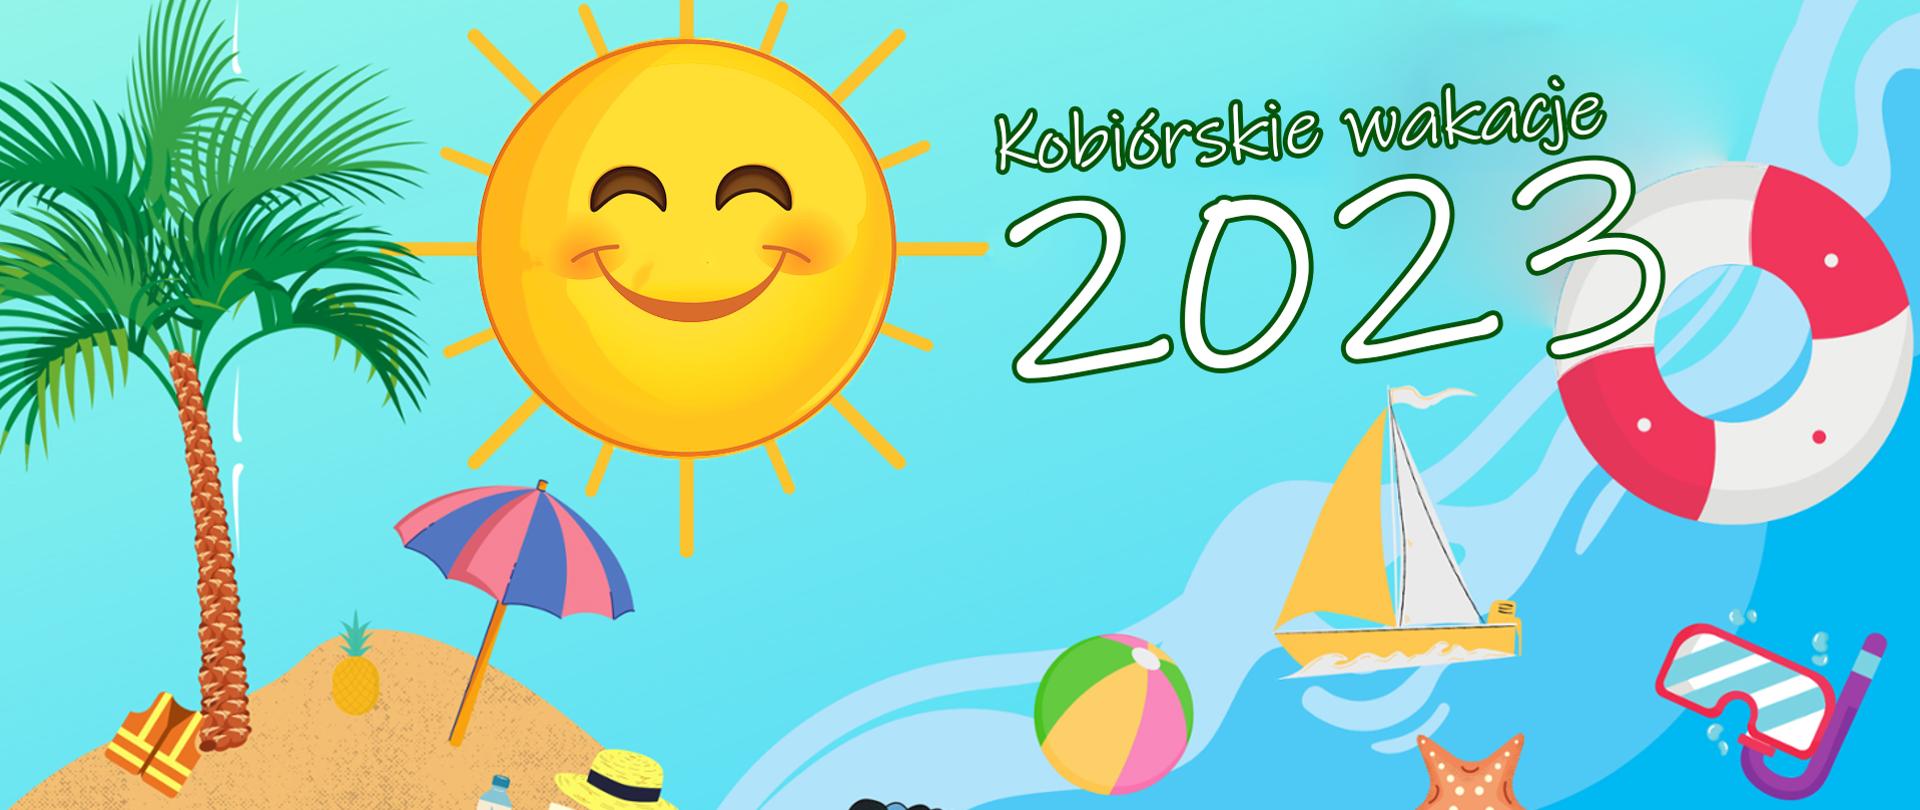 Na niebieskim tle słońce palma na i parasolka na piaskowej wysepce, piłka, łódka, okulary, koło ratunkowe oraz napis Kobiórskie wakacje 2023